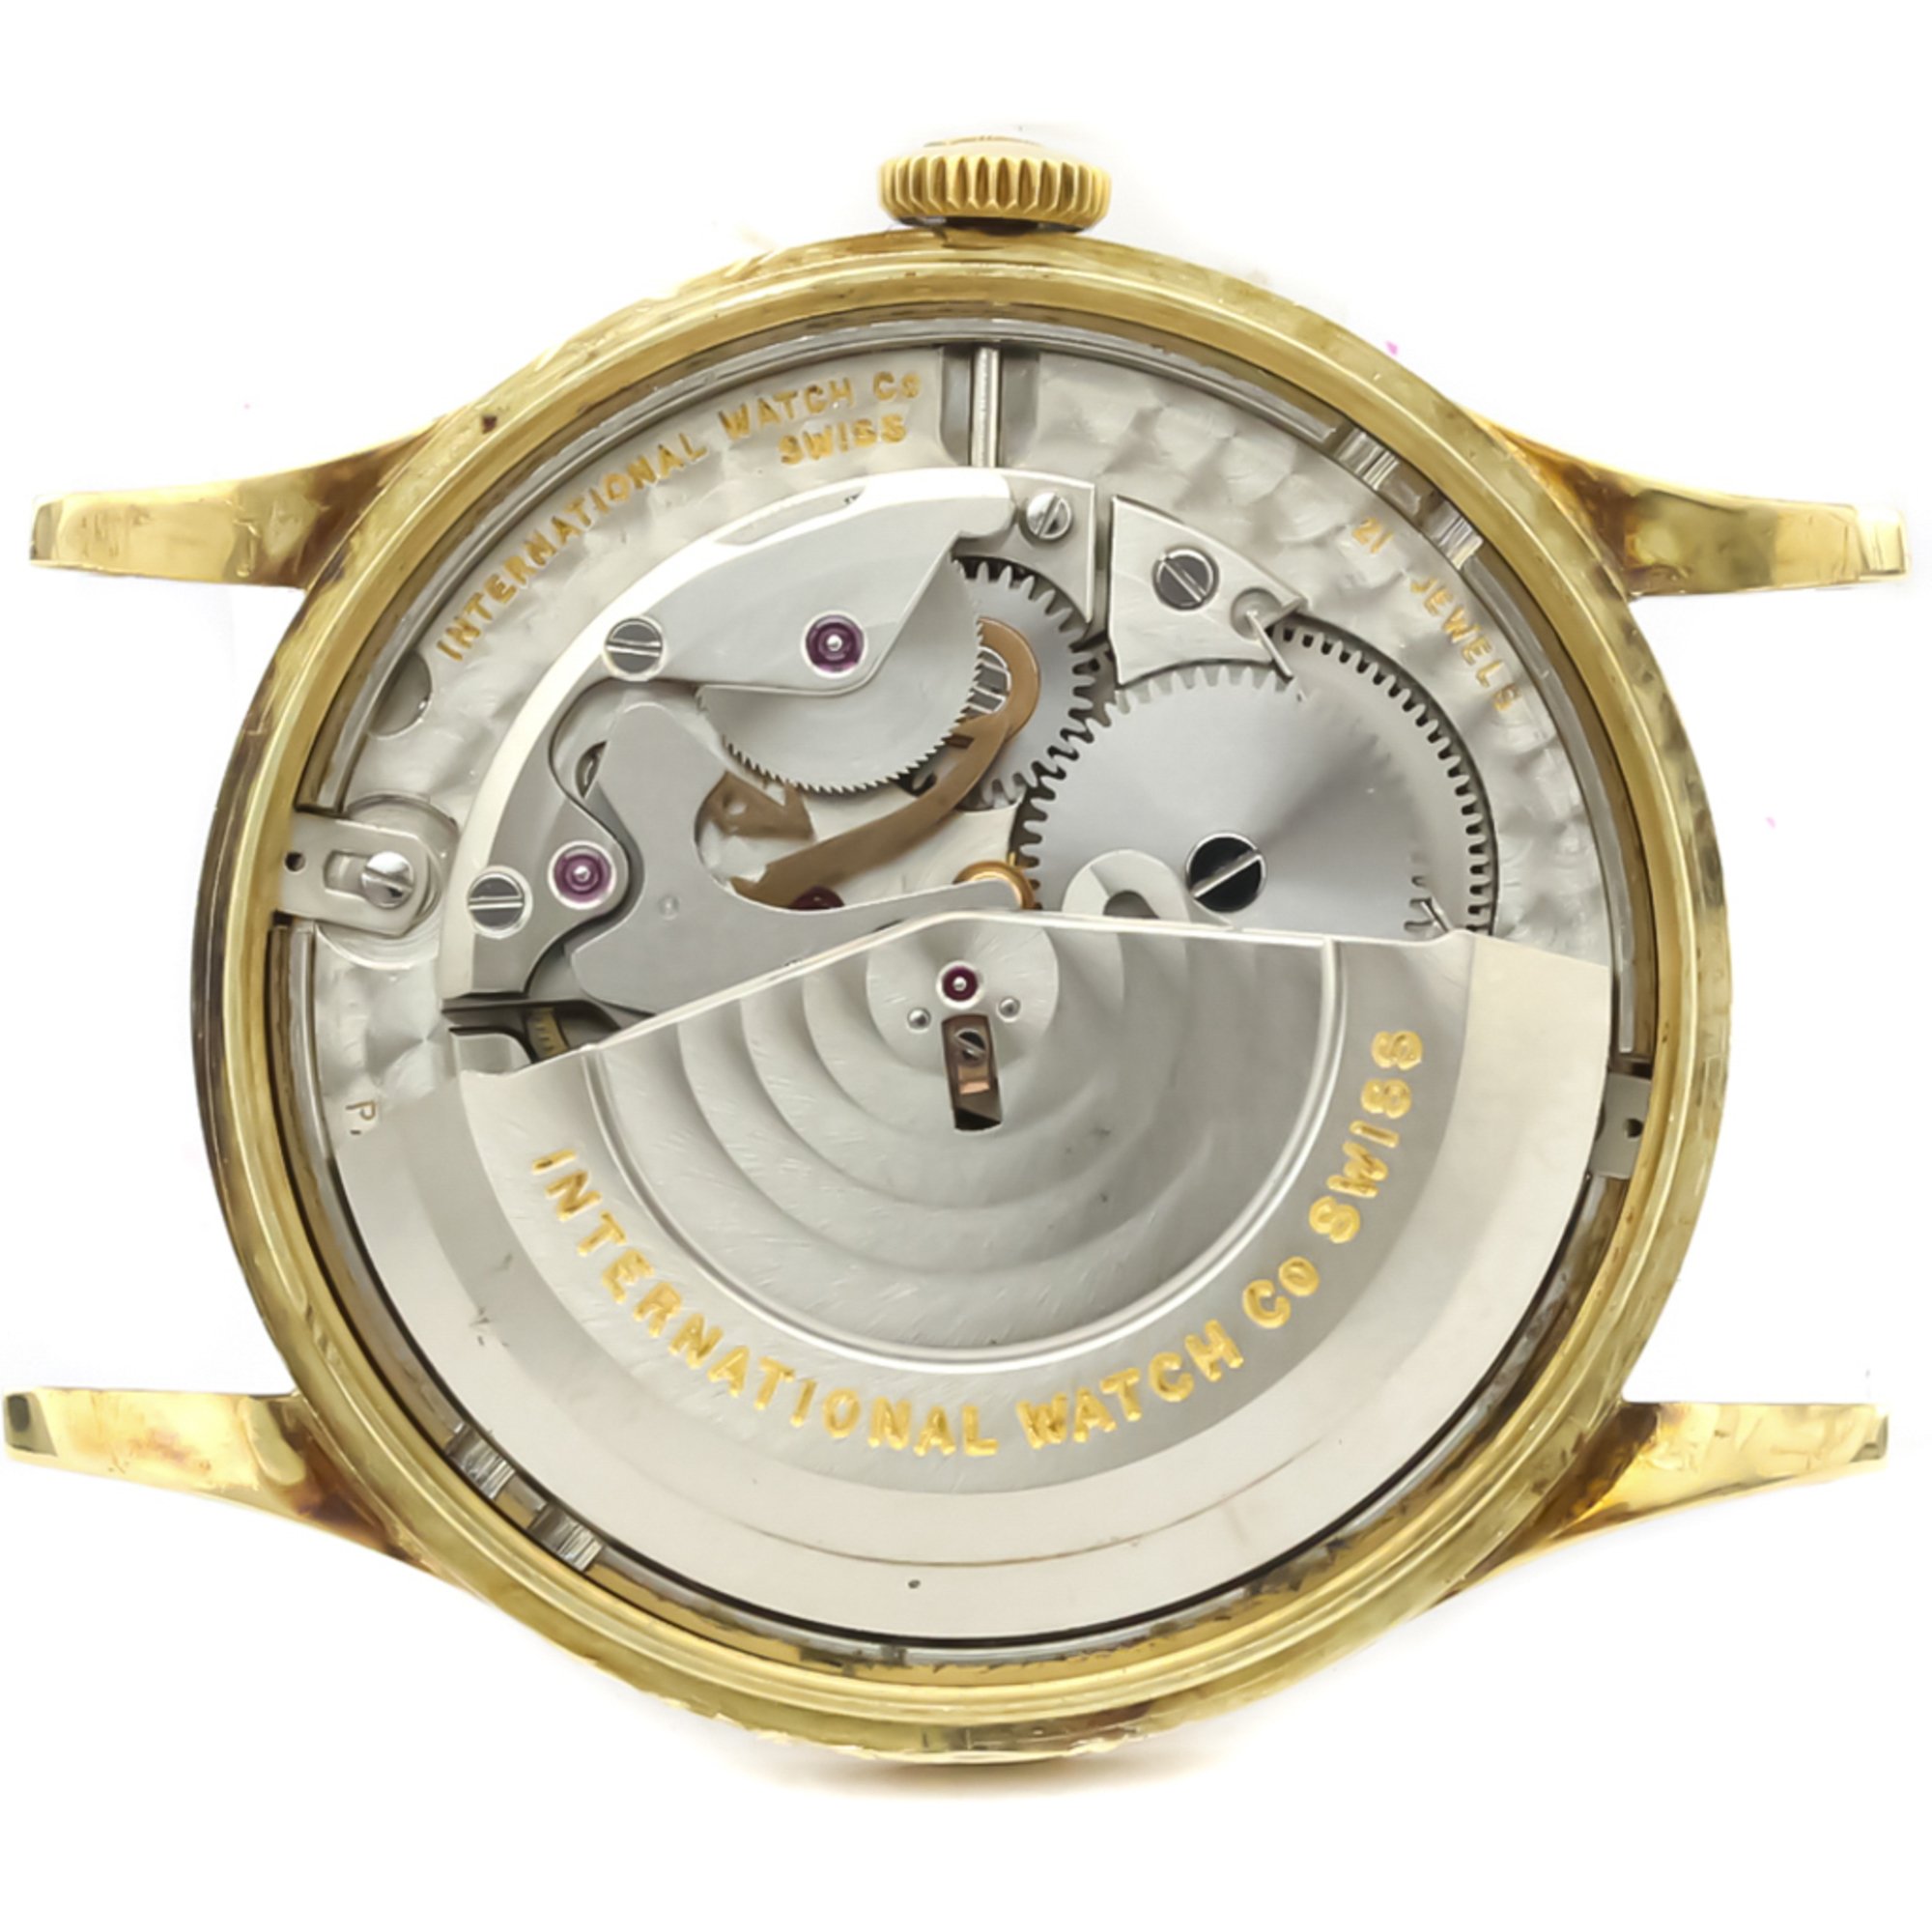 IWC Schaffhausen Automatic Gold Plated Men's Dress Watch